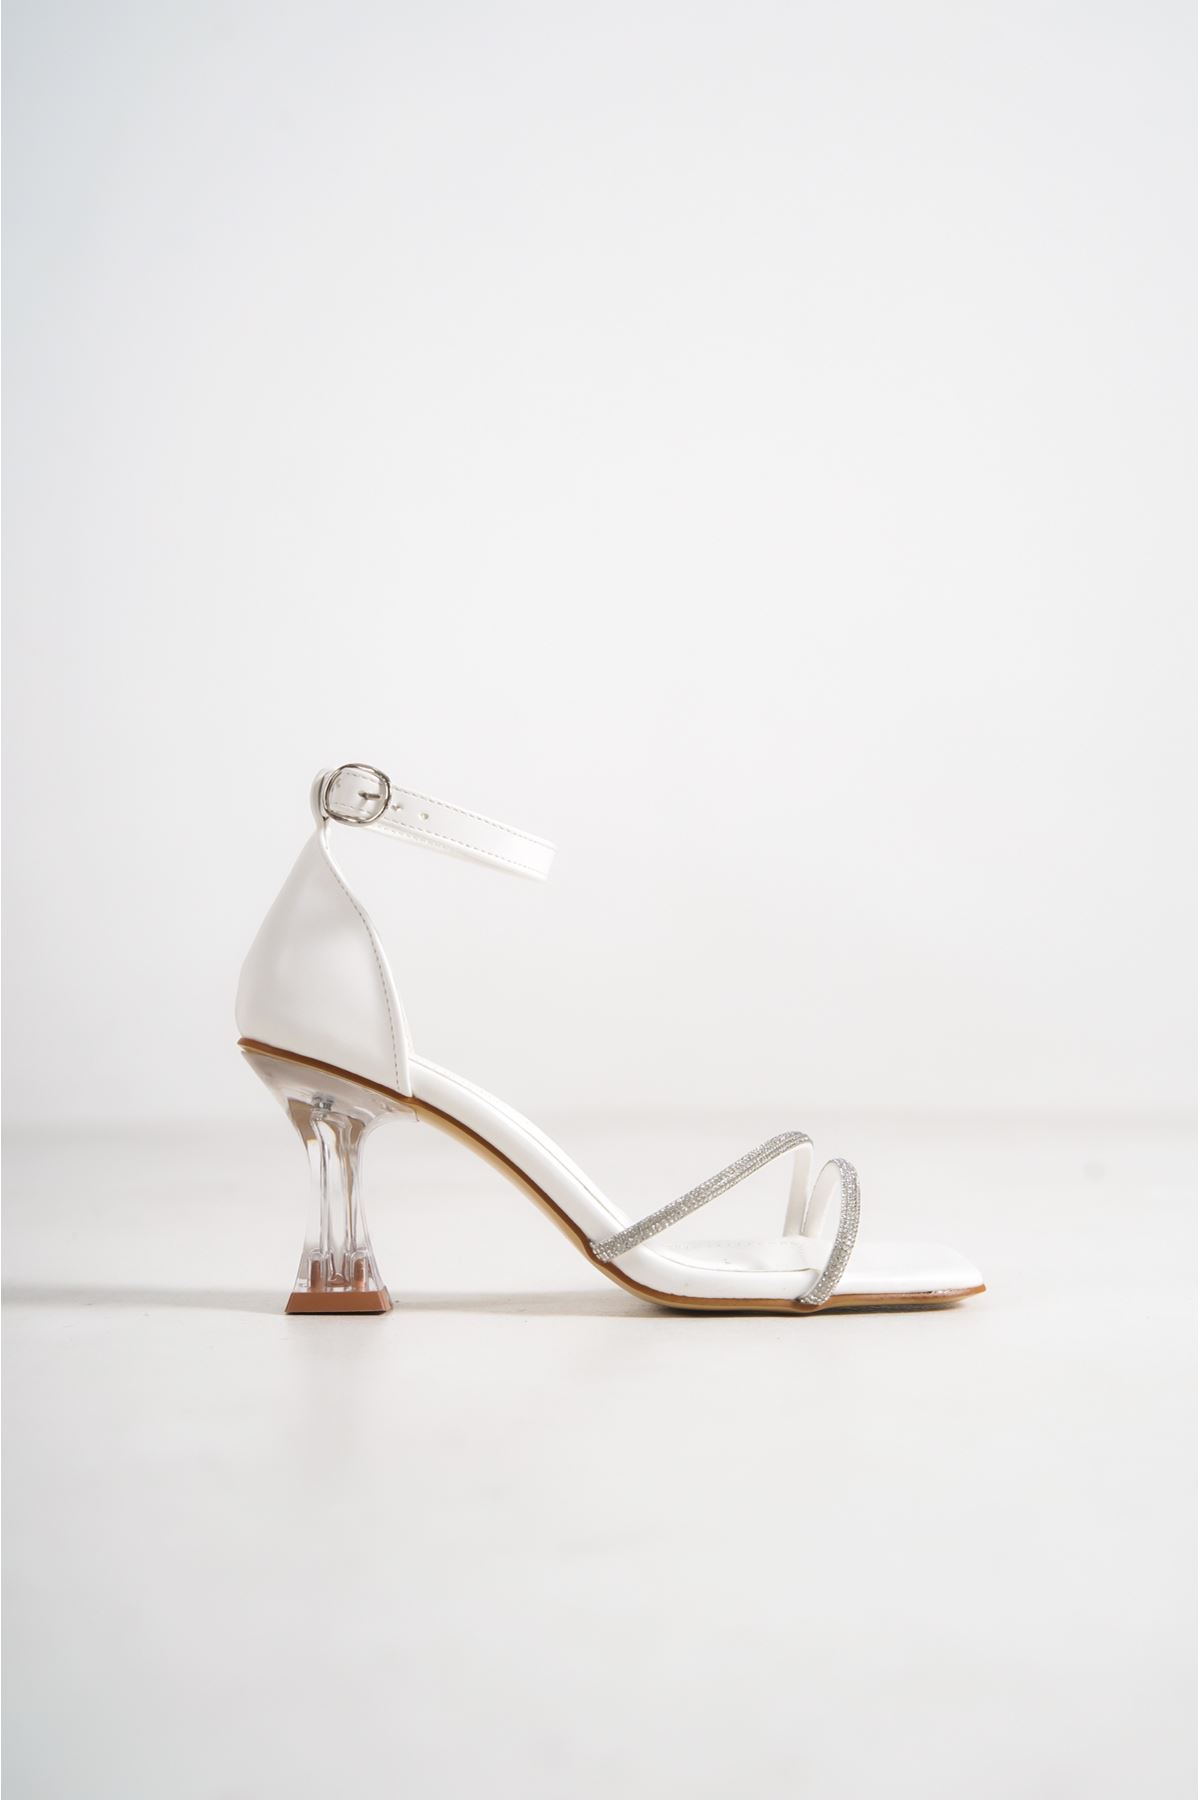 Steve Beyaz Taşlı Şeffaf Topuklu Mat Deri Kadın Ayakkabı